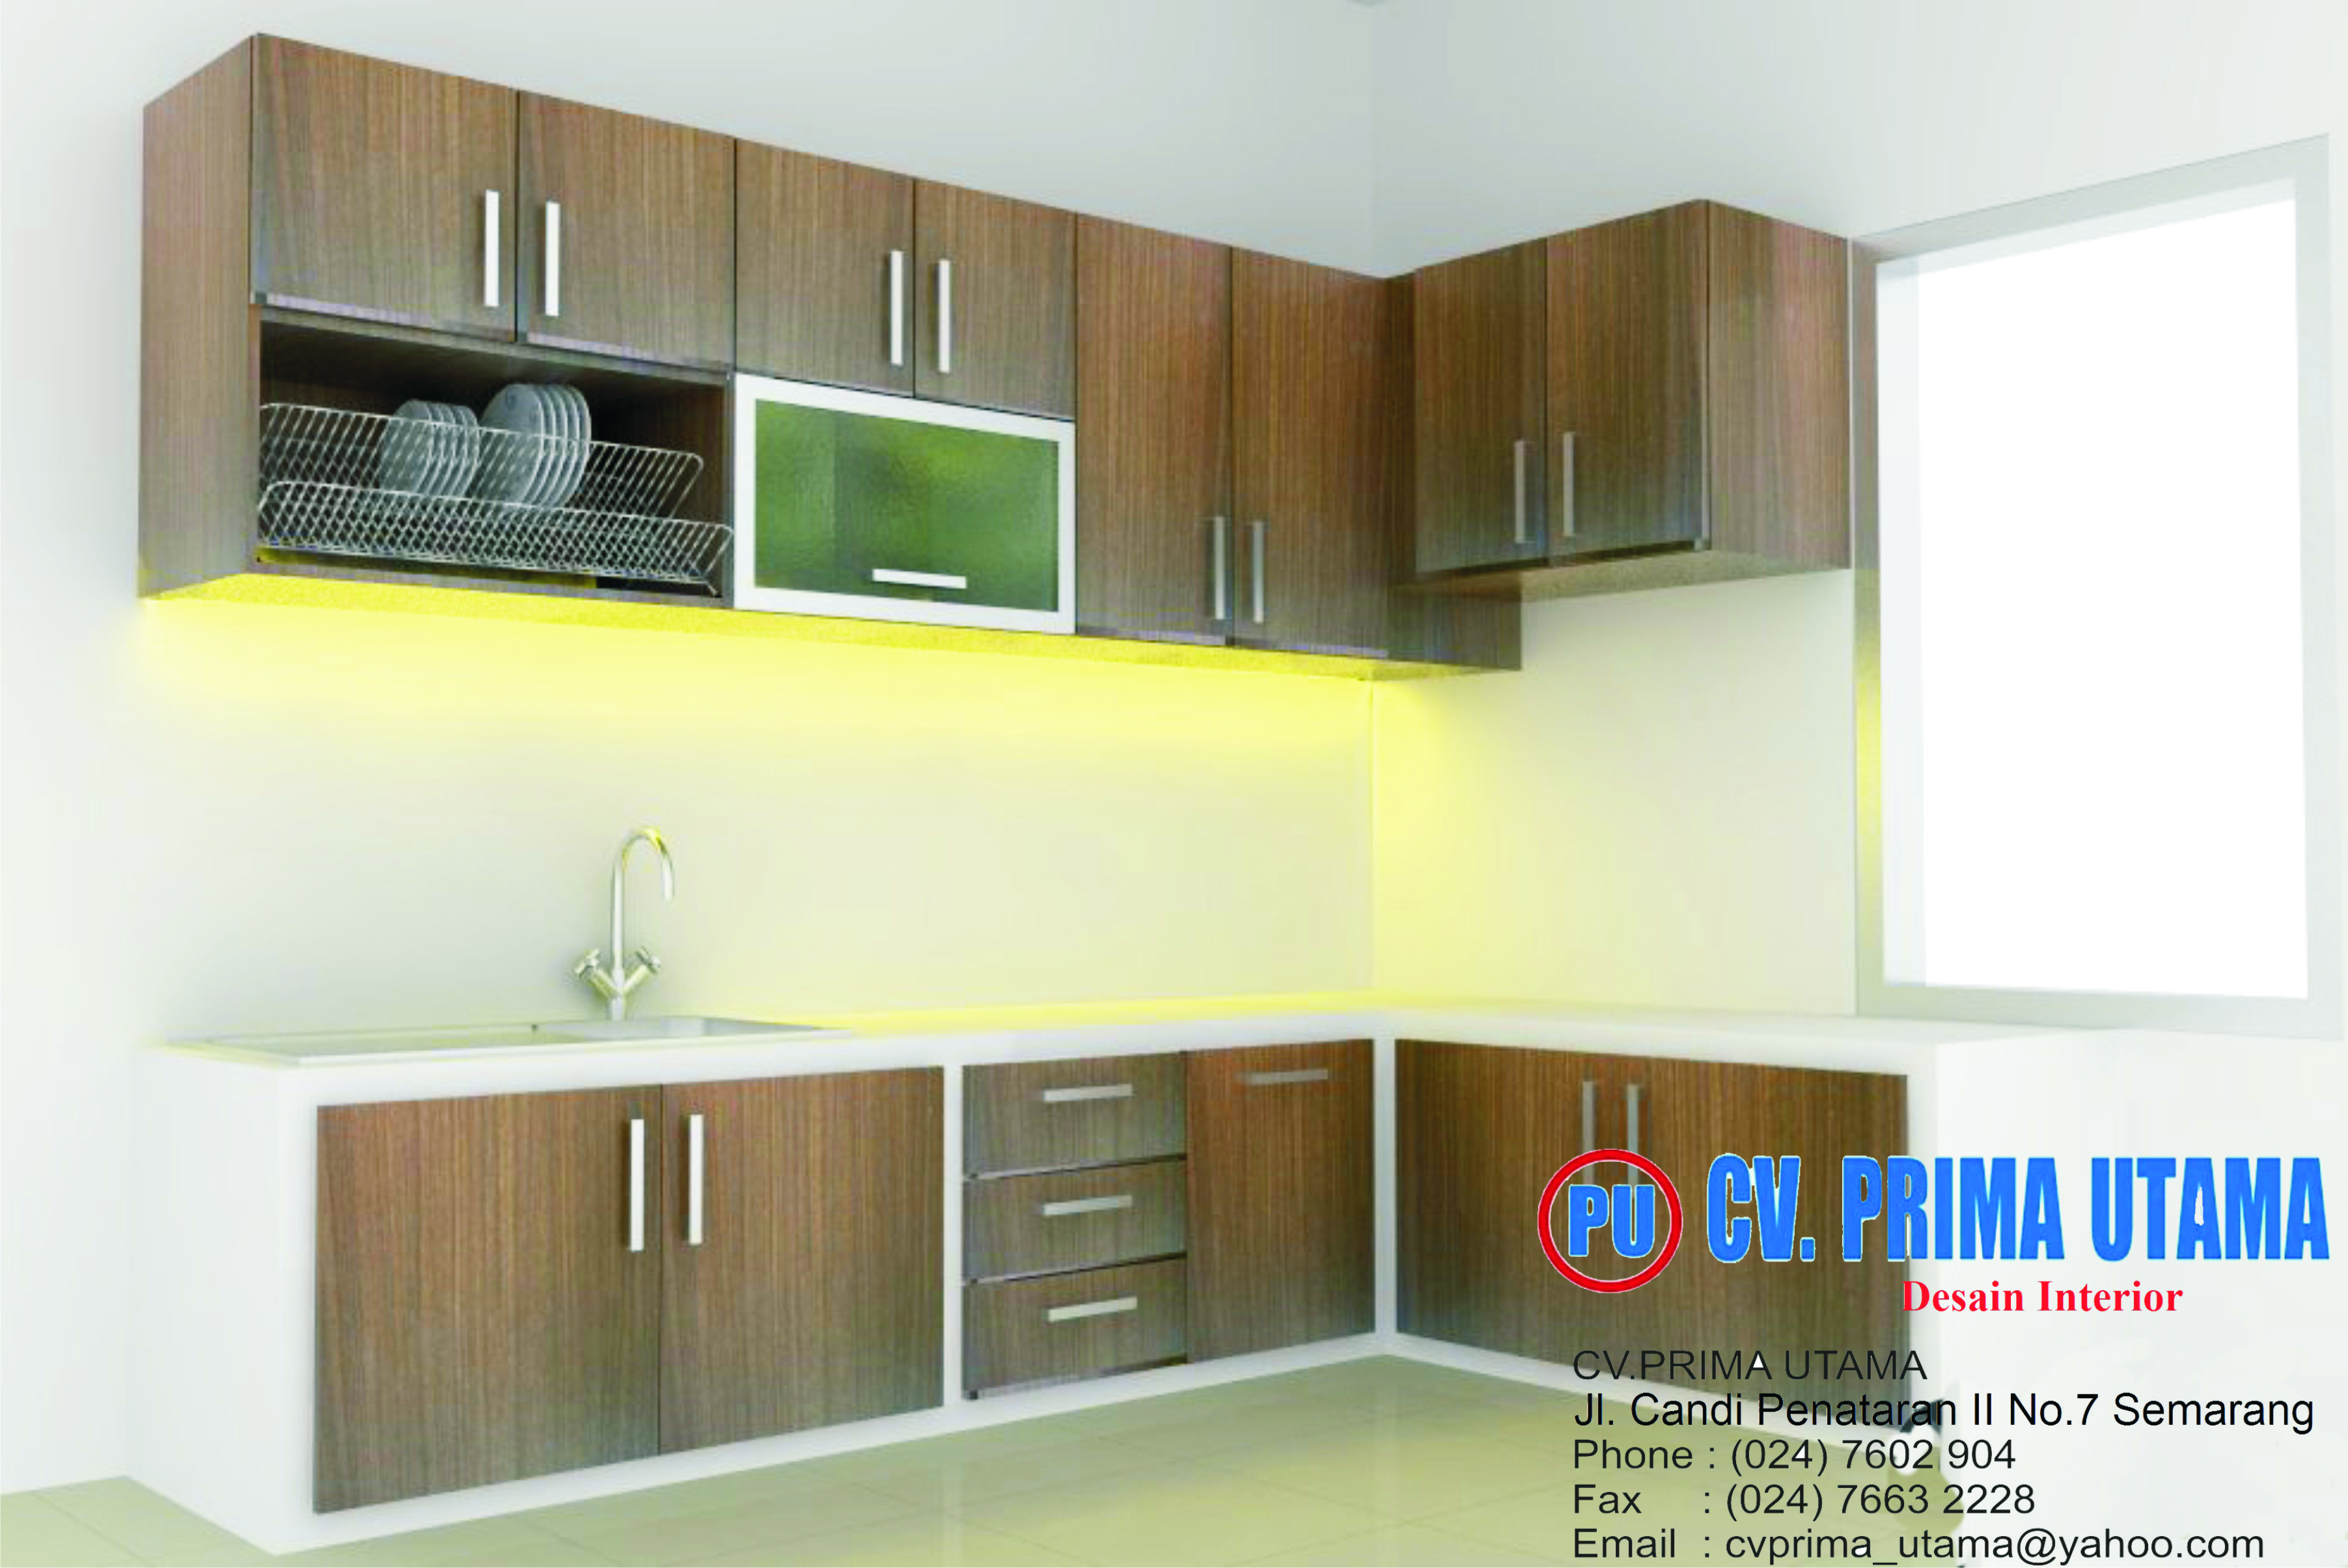 Design Interior Home CV PRIMA UTAMA